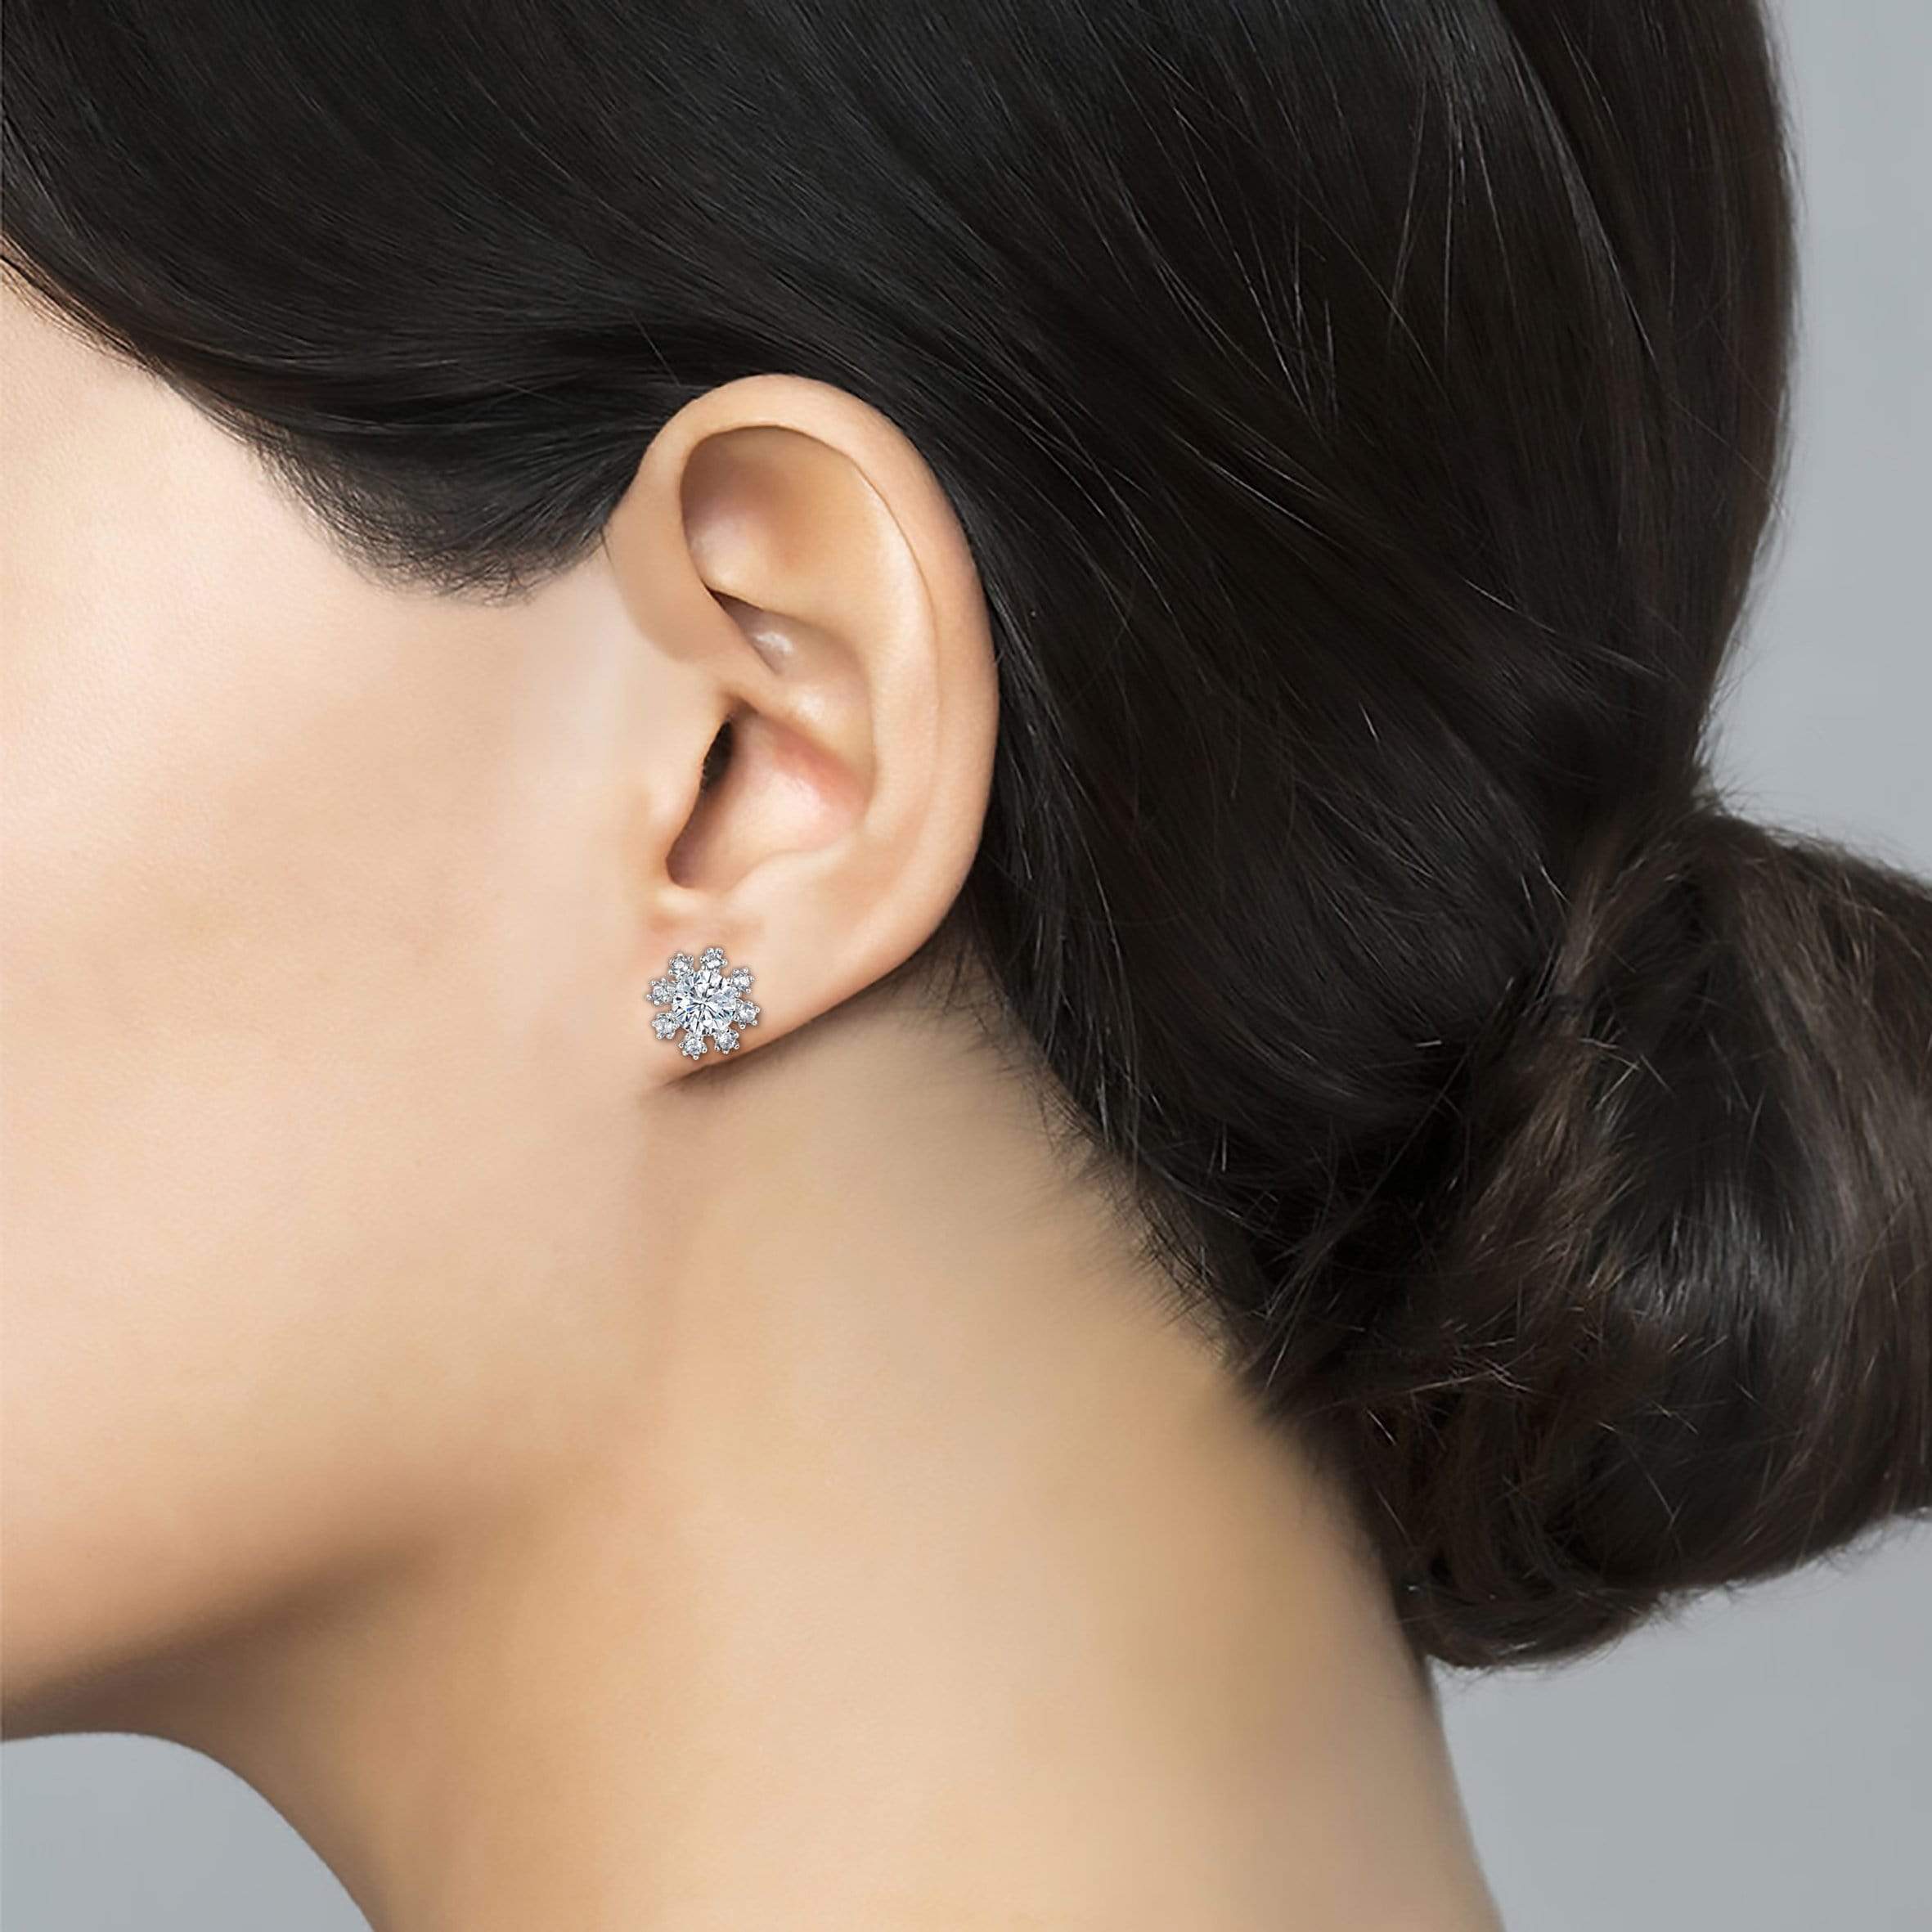 Lynora Jewellery Earring Sterling Silver / Clear Penelope Sterling Silver Earrings